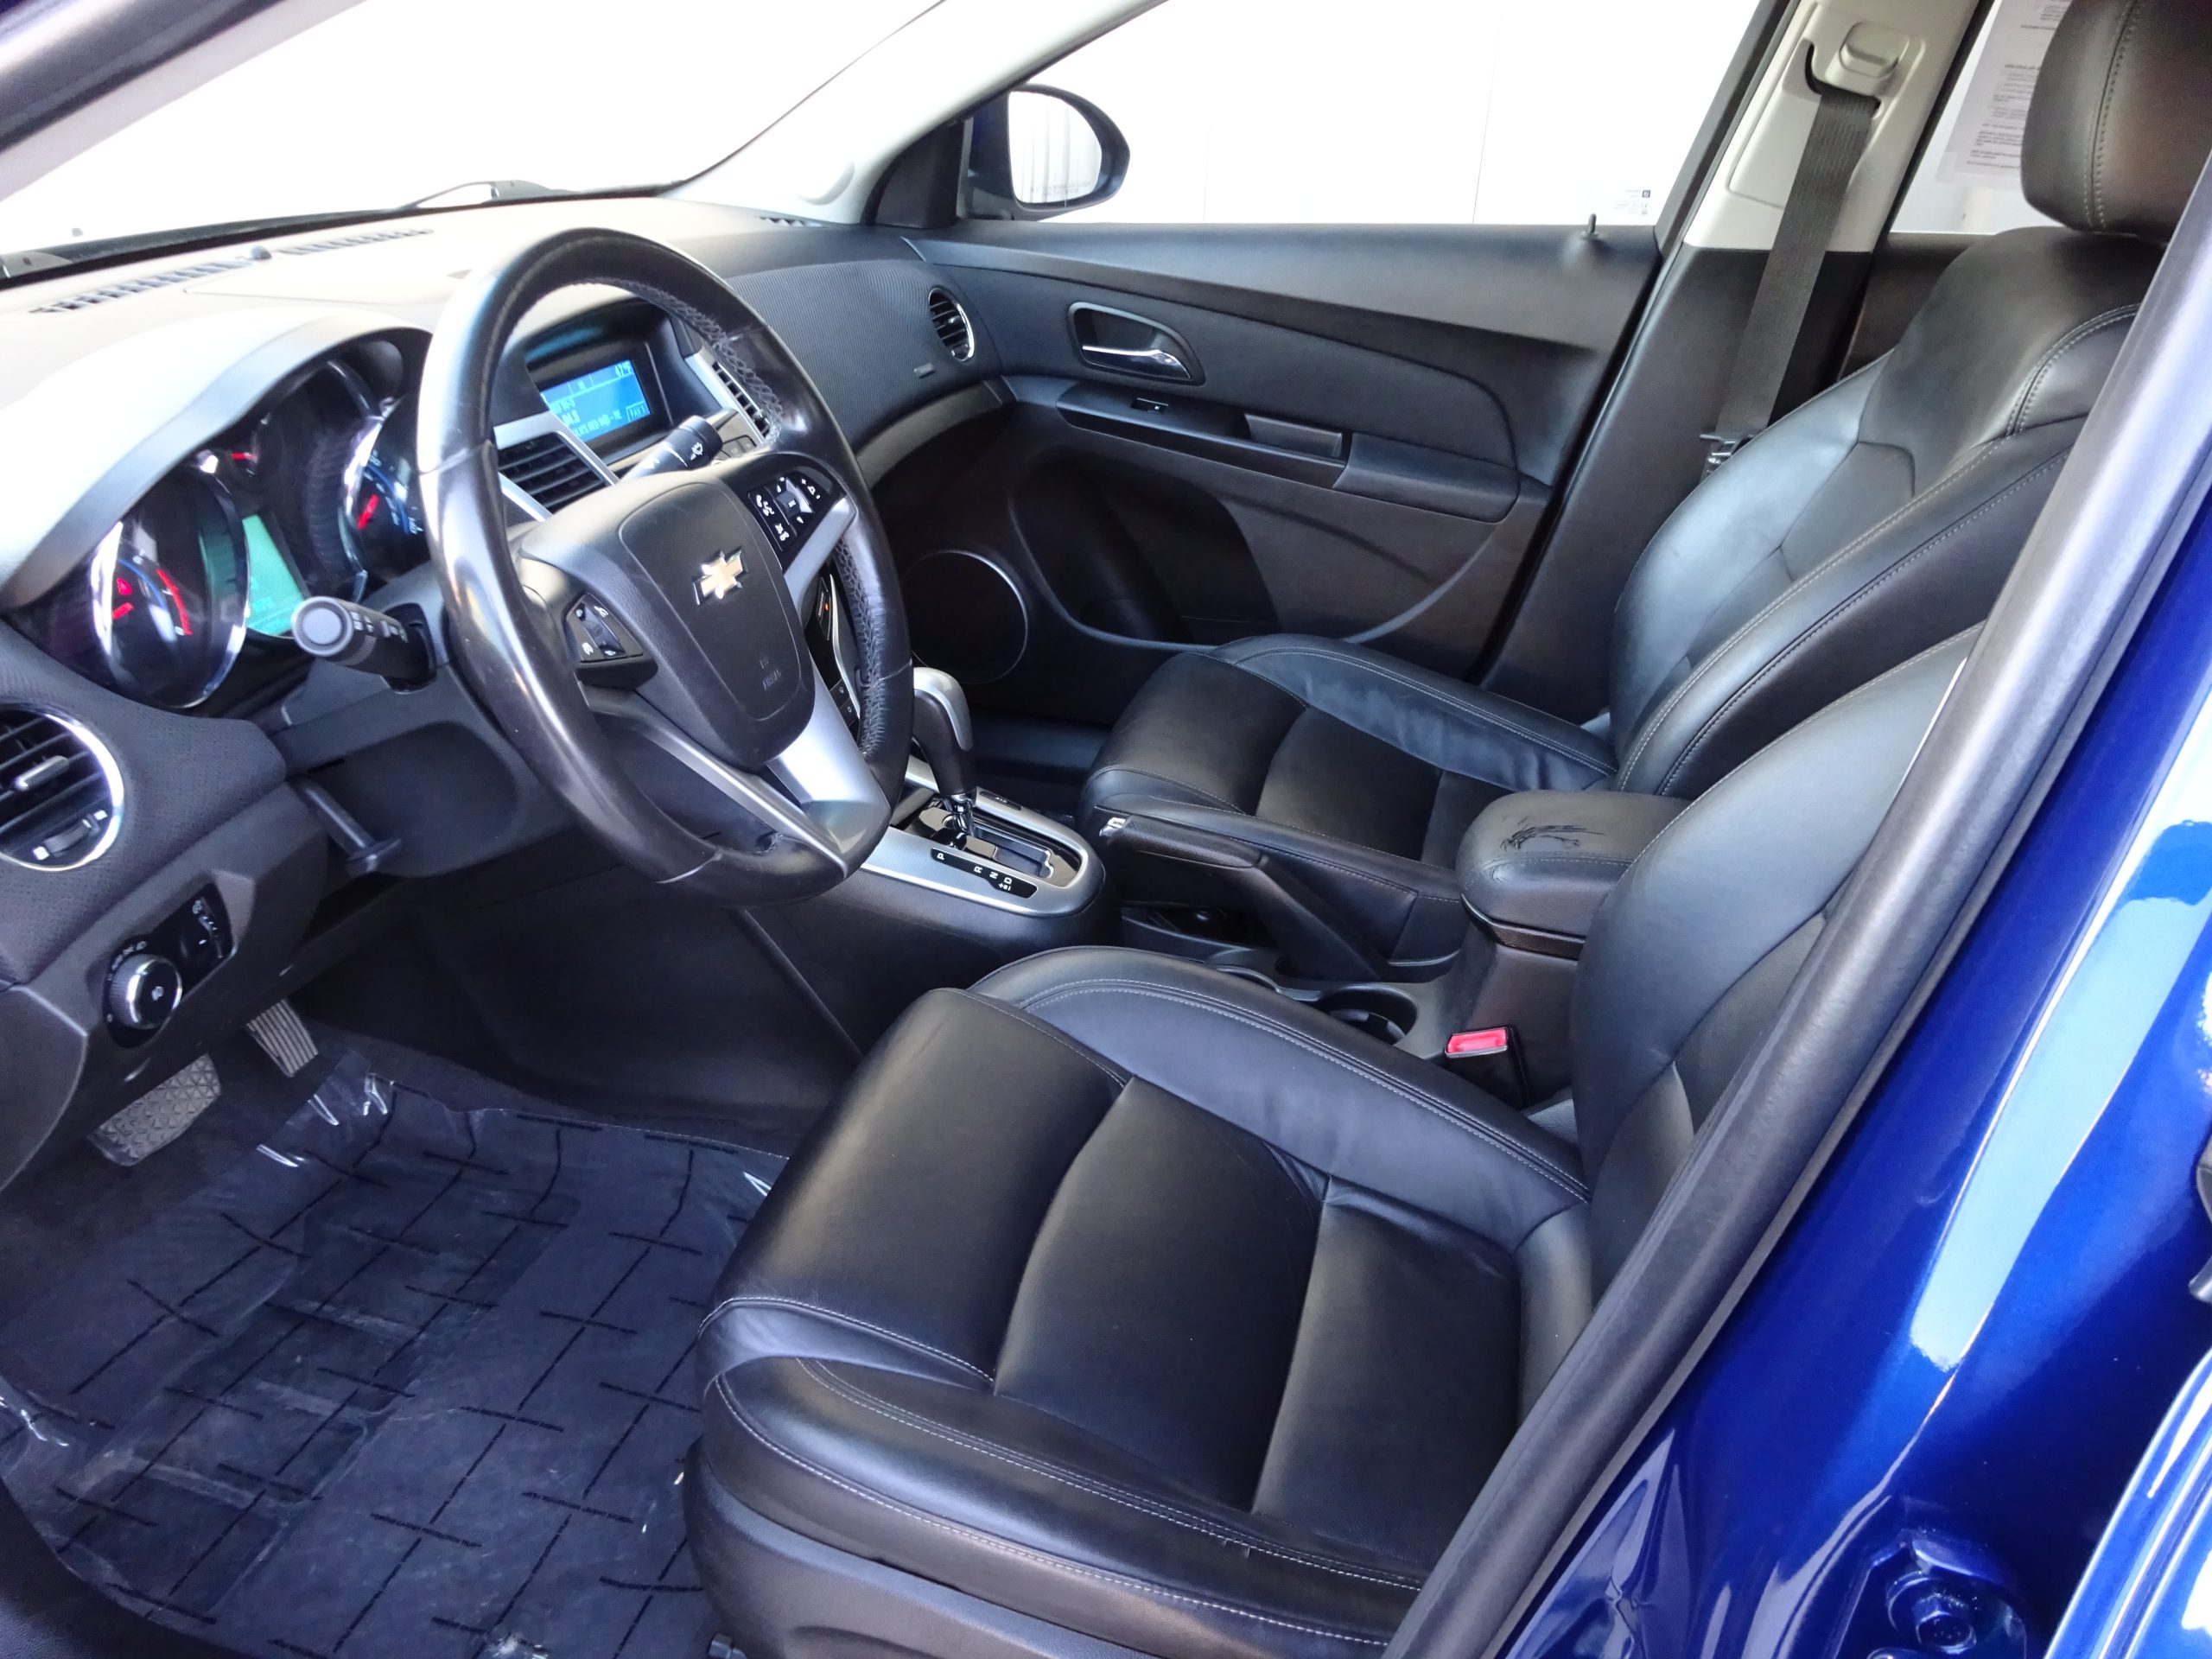 Used 2012 Chevrolet Cruze LTZ Sedan for sale in 